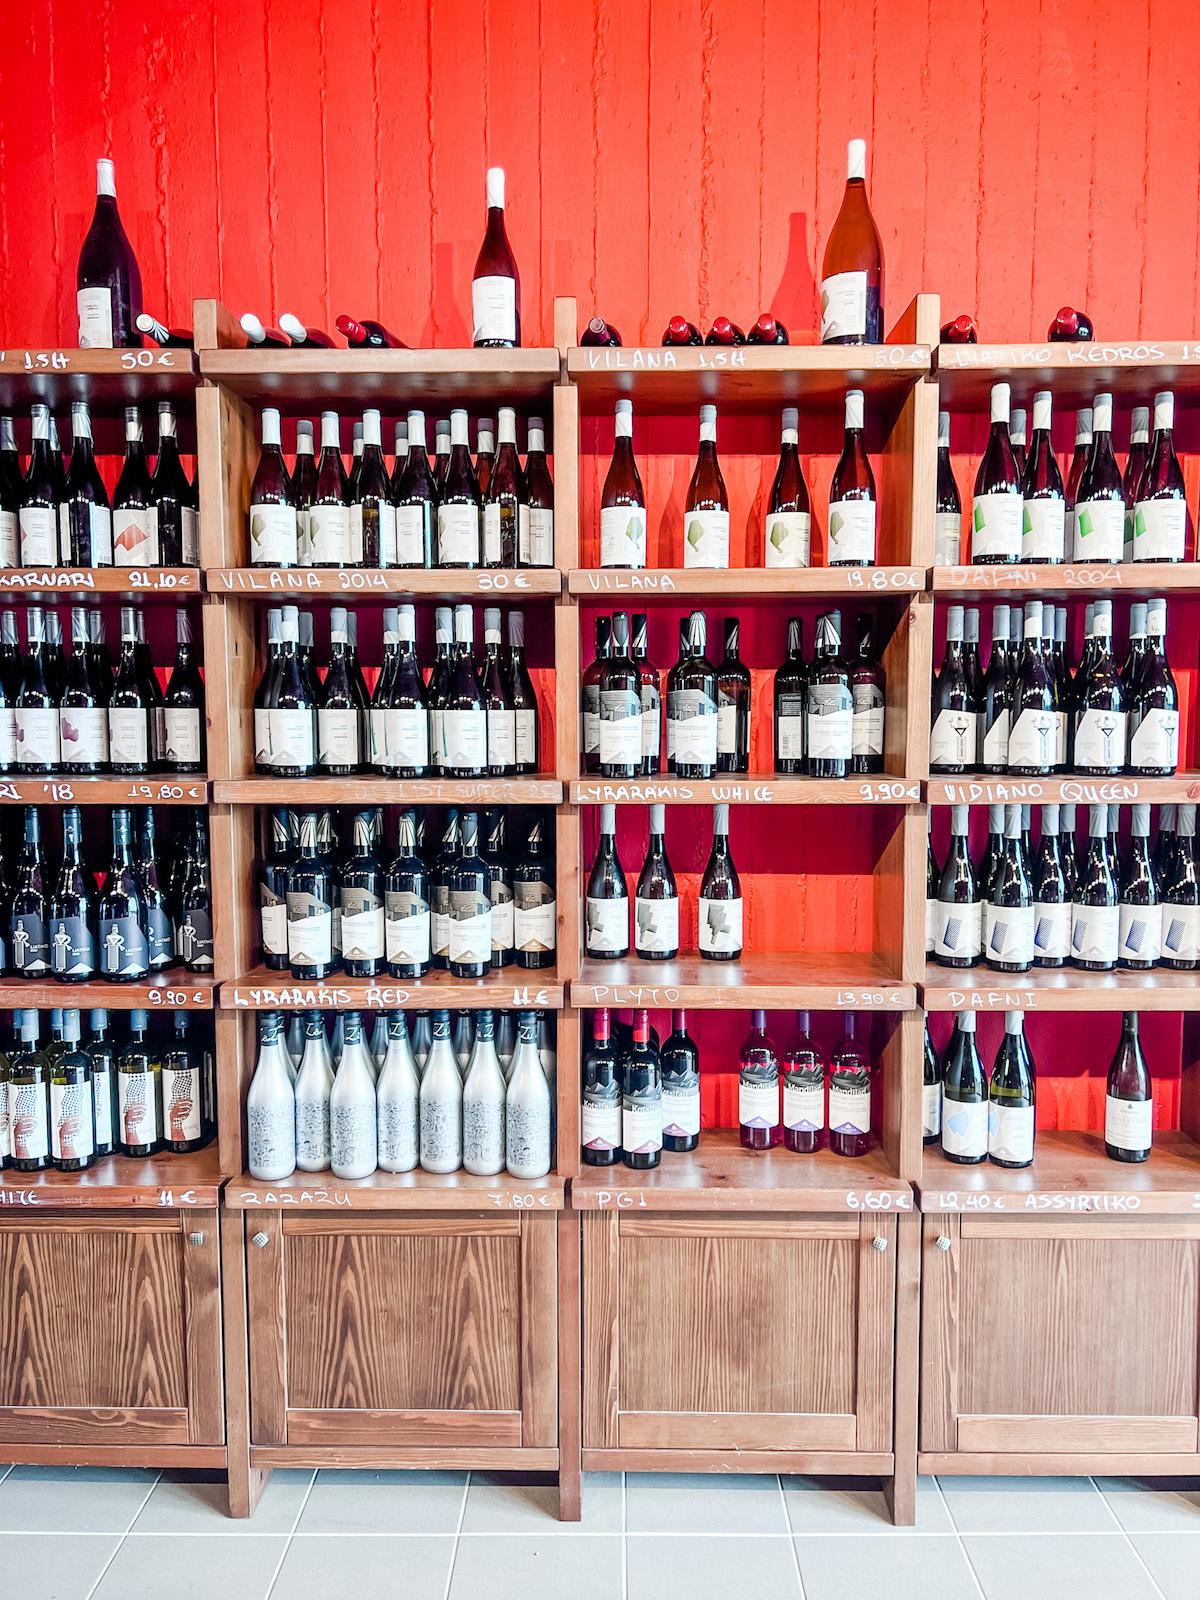 Lyrarakis Winery bottles on shelf